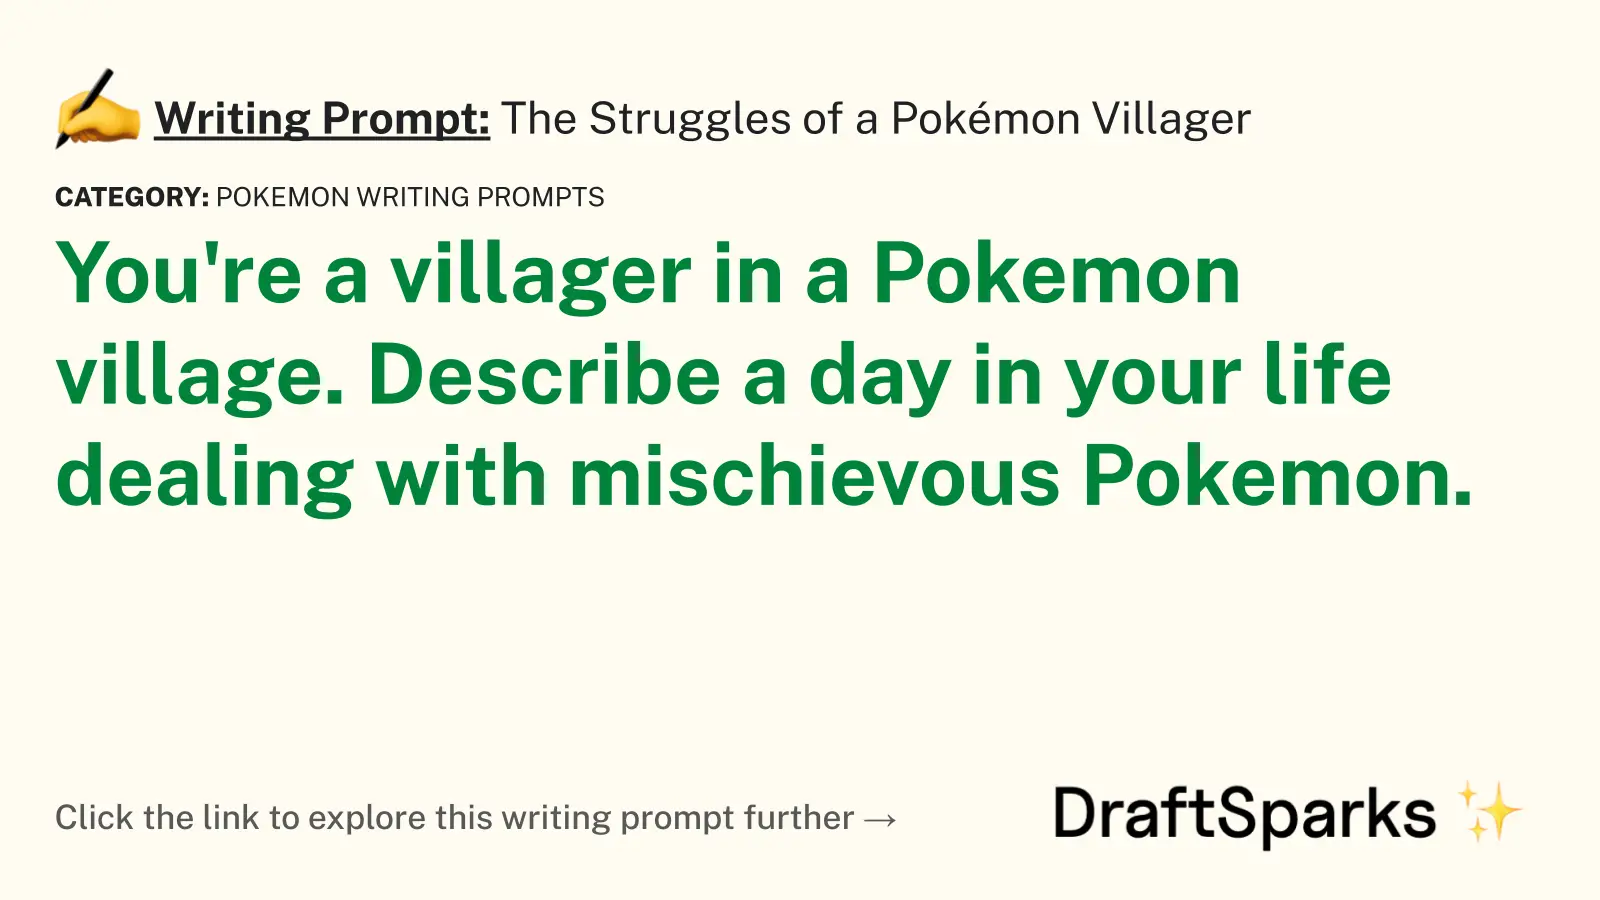 The Struggles of a Pokémon Villager